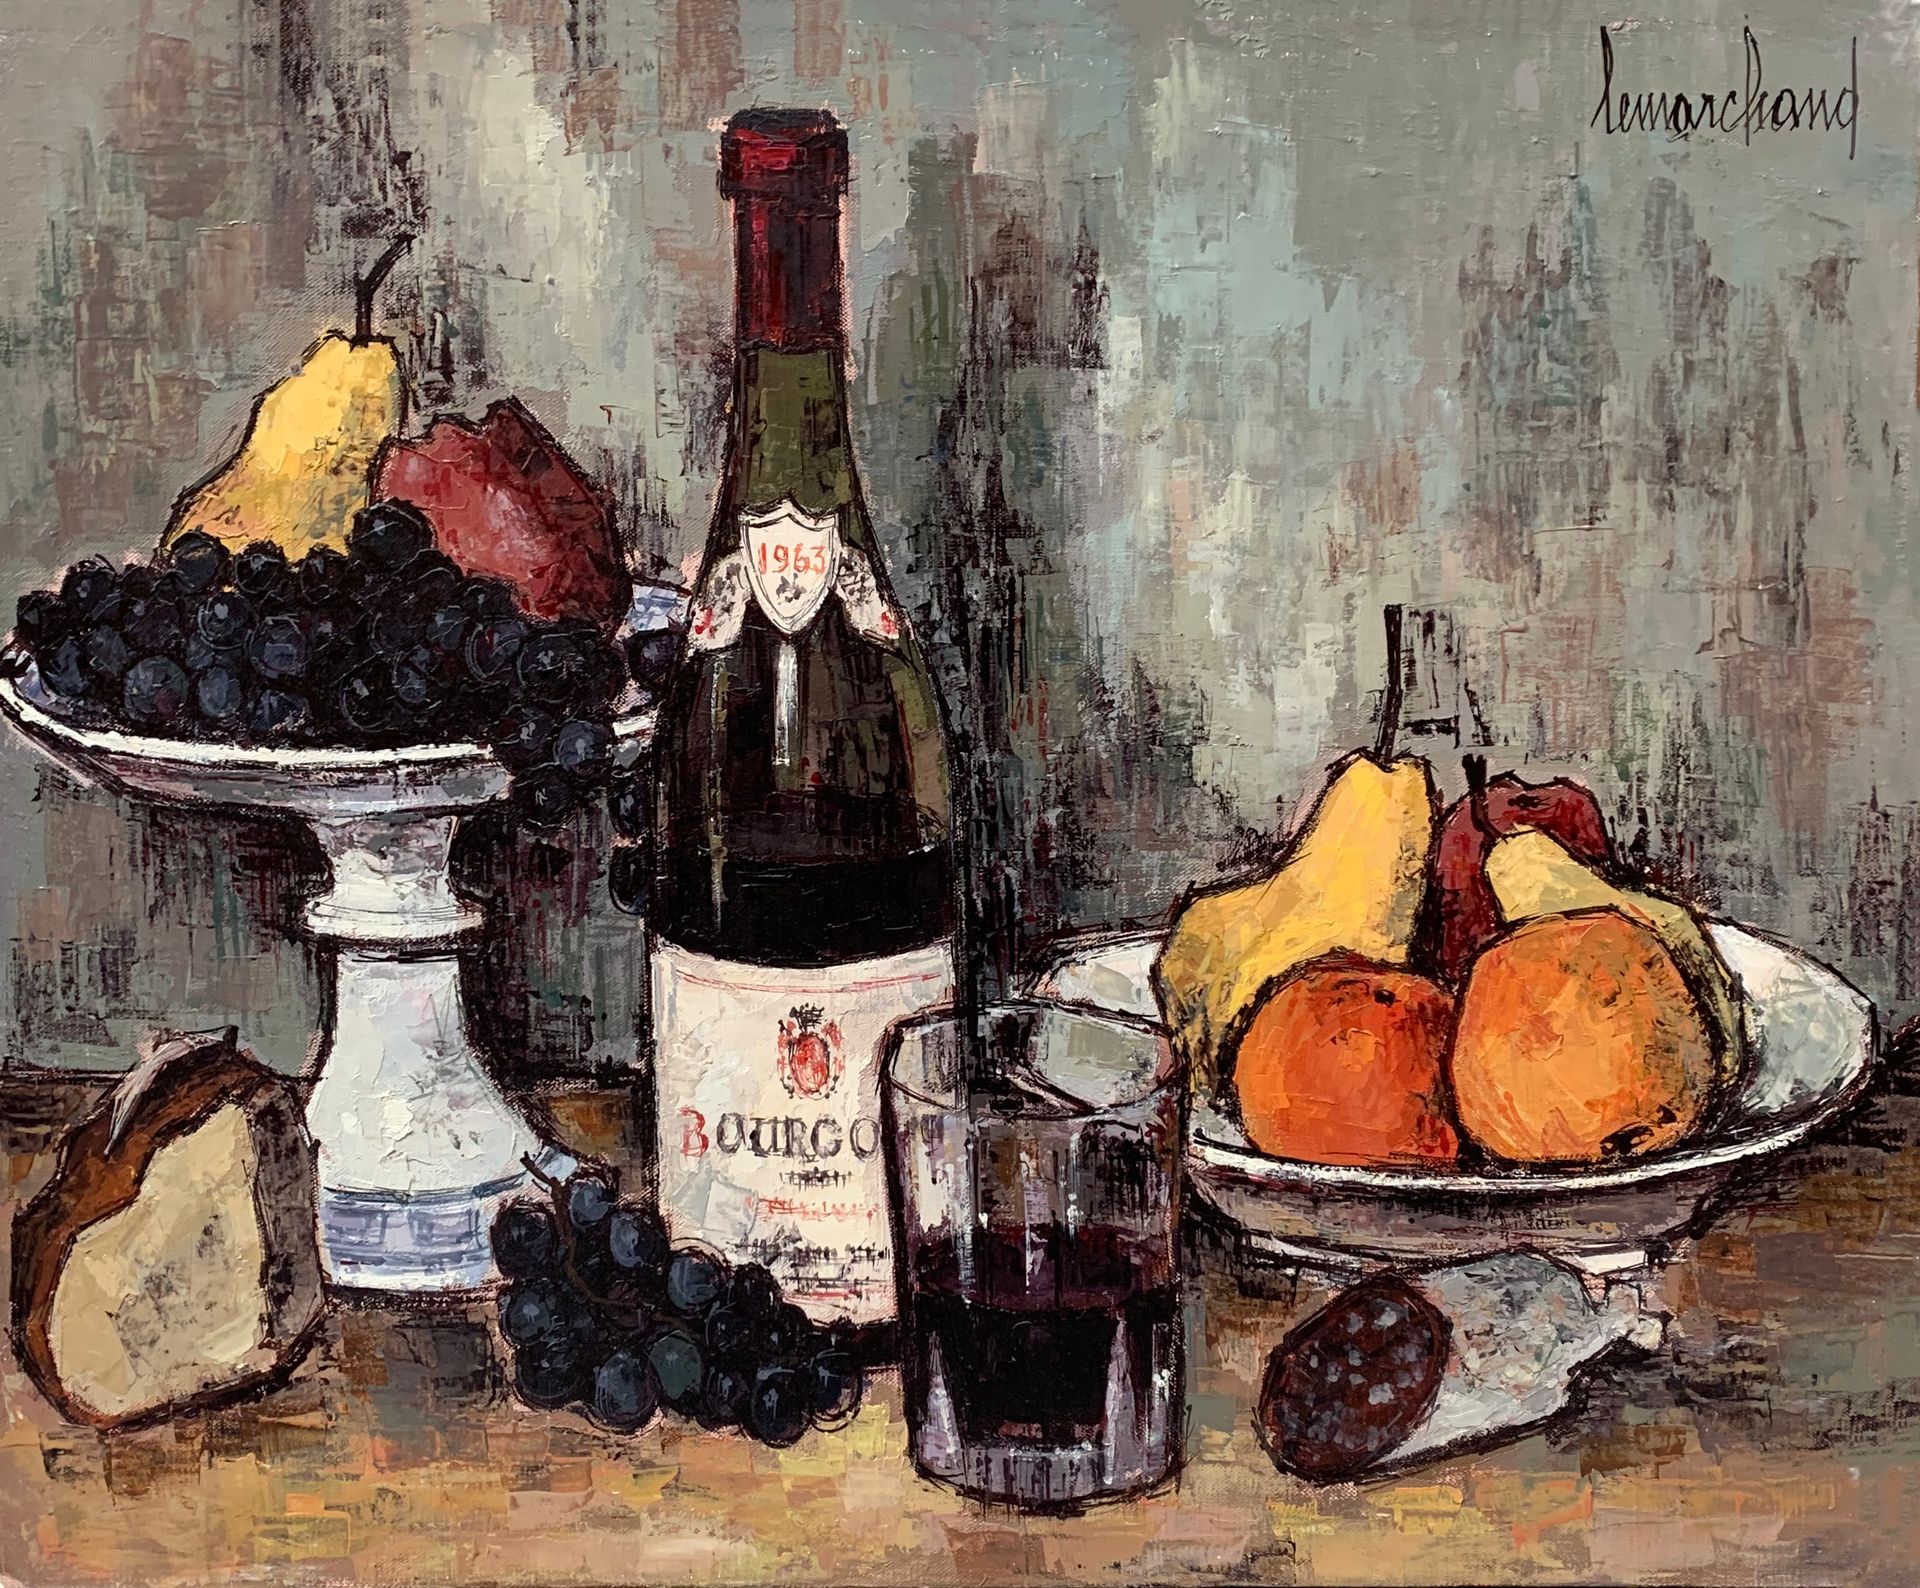 Null 皮埃尔-莱马赫德 (1906-1970)

勃艮第酒瓶的静物画

右上角有签名的布面油画

50 x 61厘米。